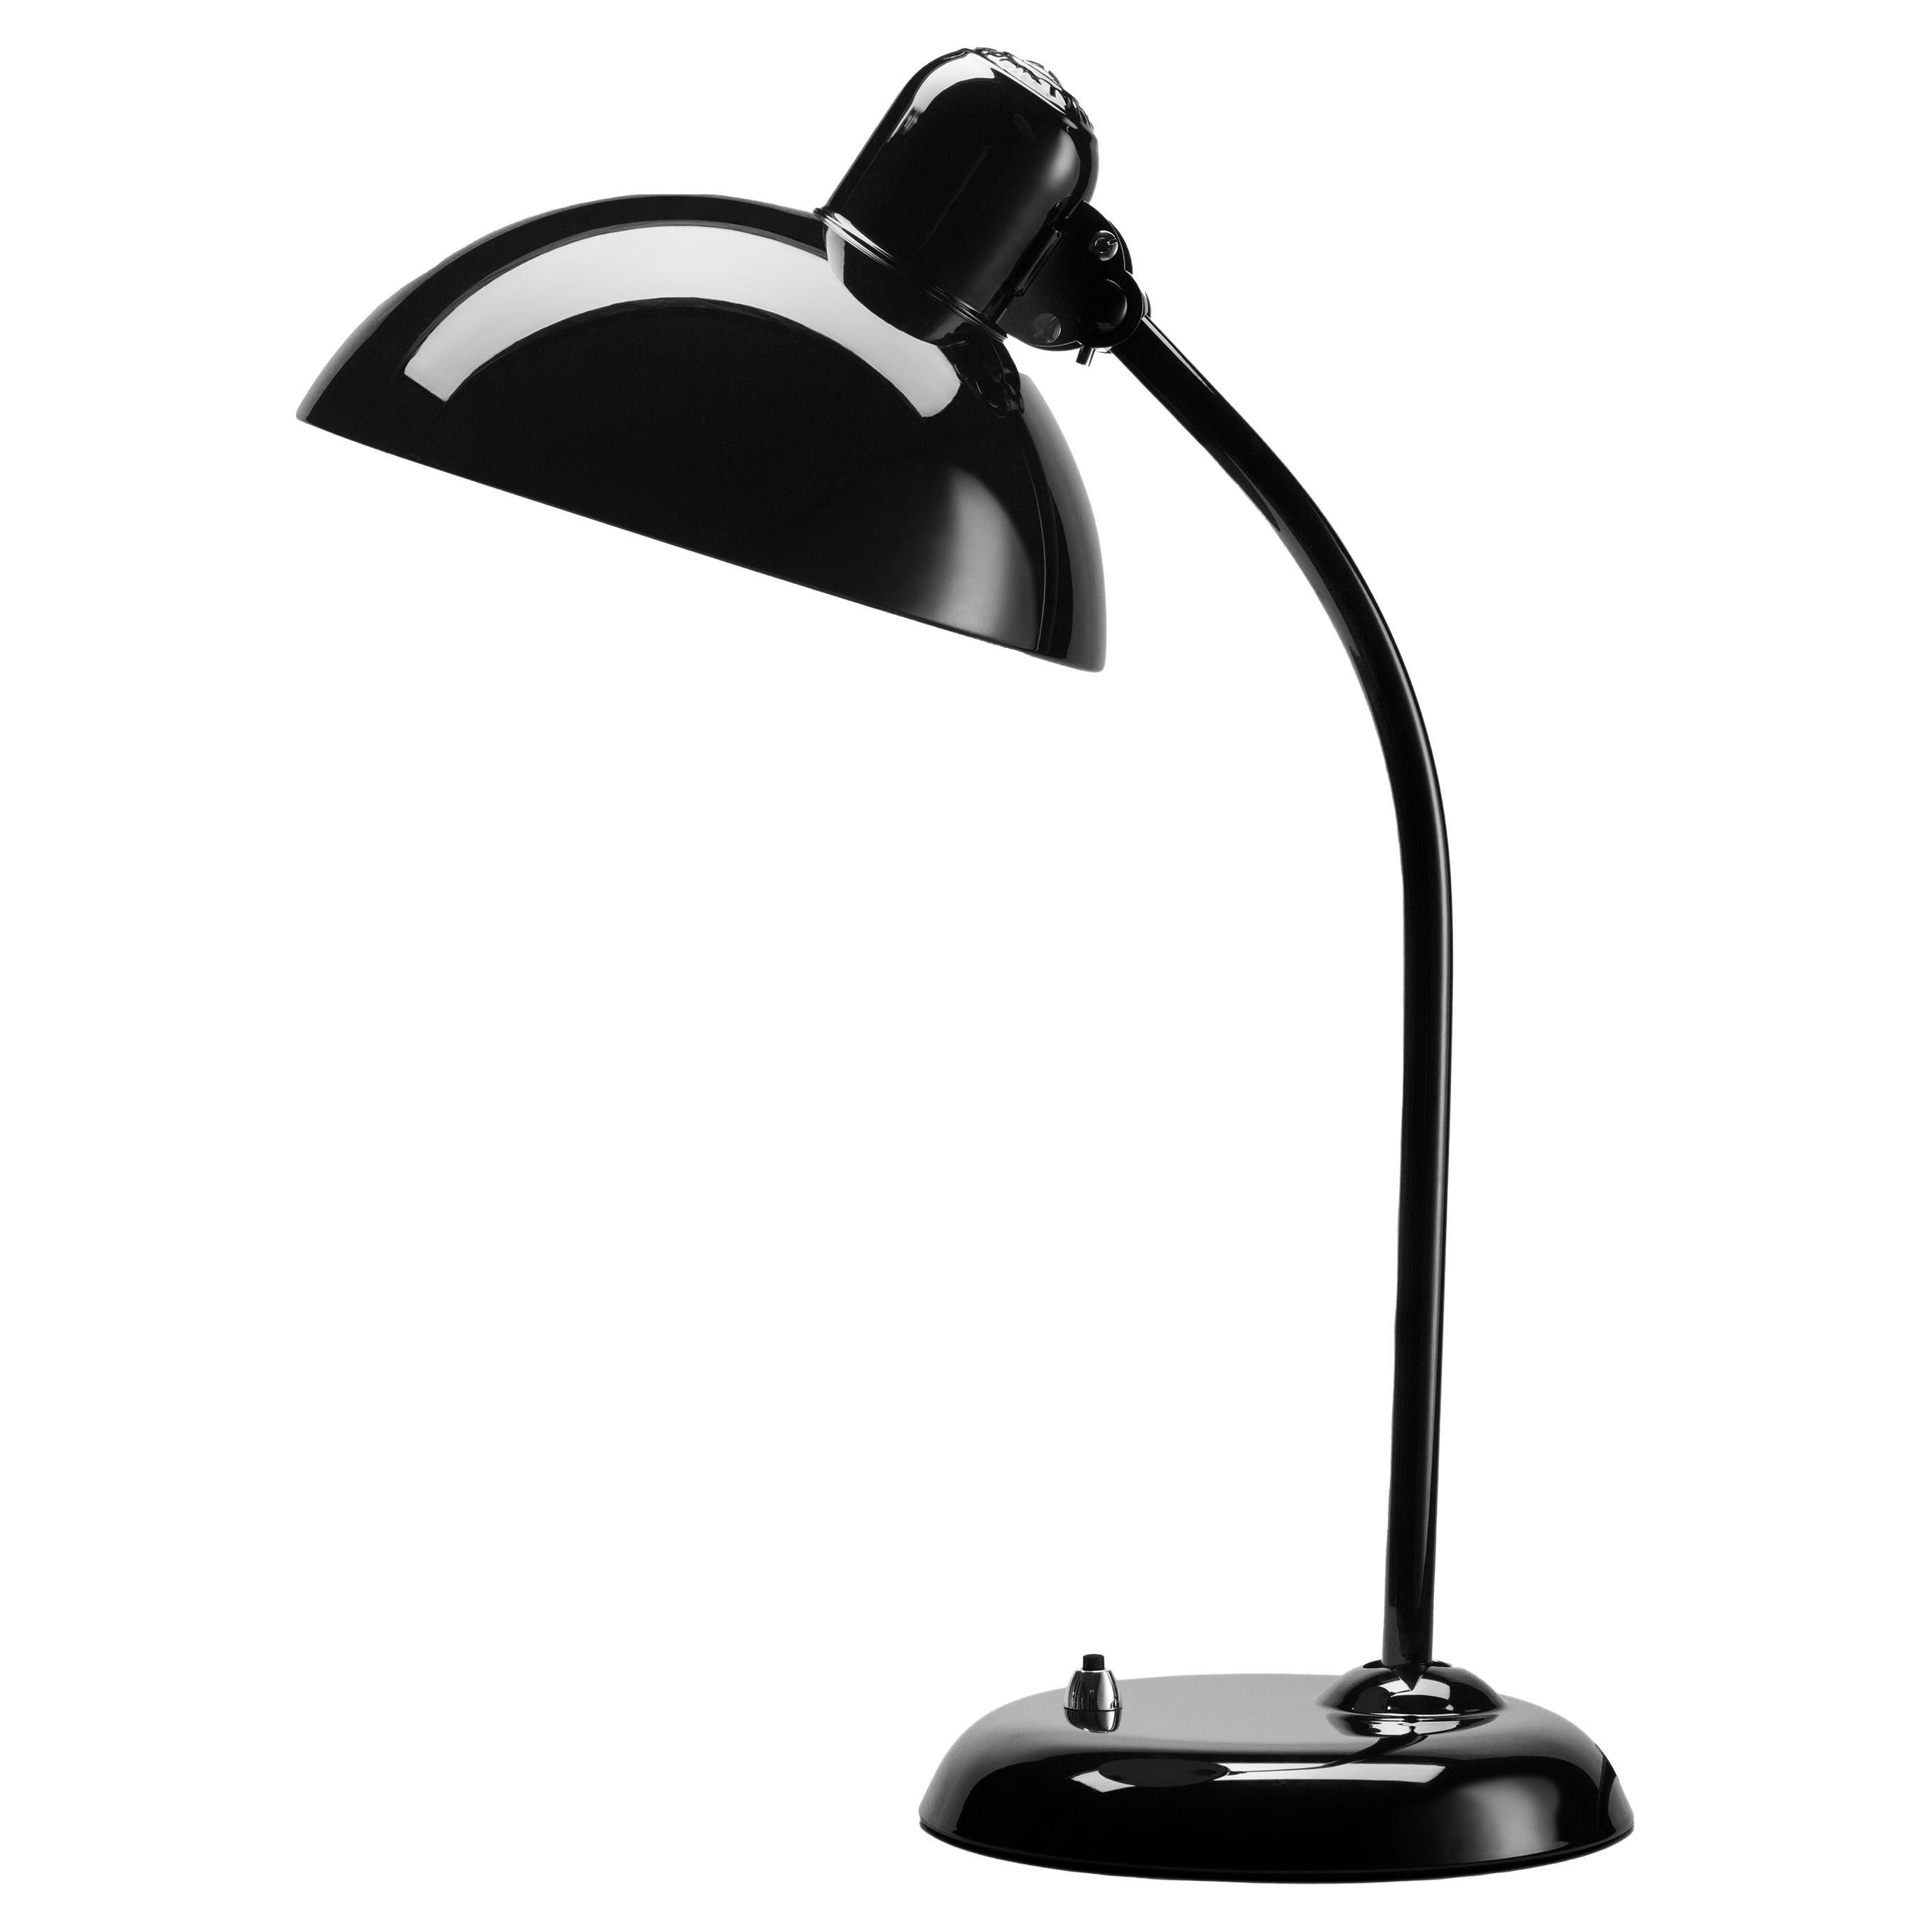 Christian Dell 'Kaiser Idell 6556-T' Table Lamp for Fritz Hansen in Gloss Black